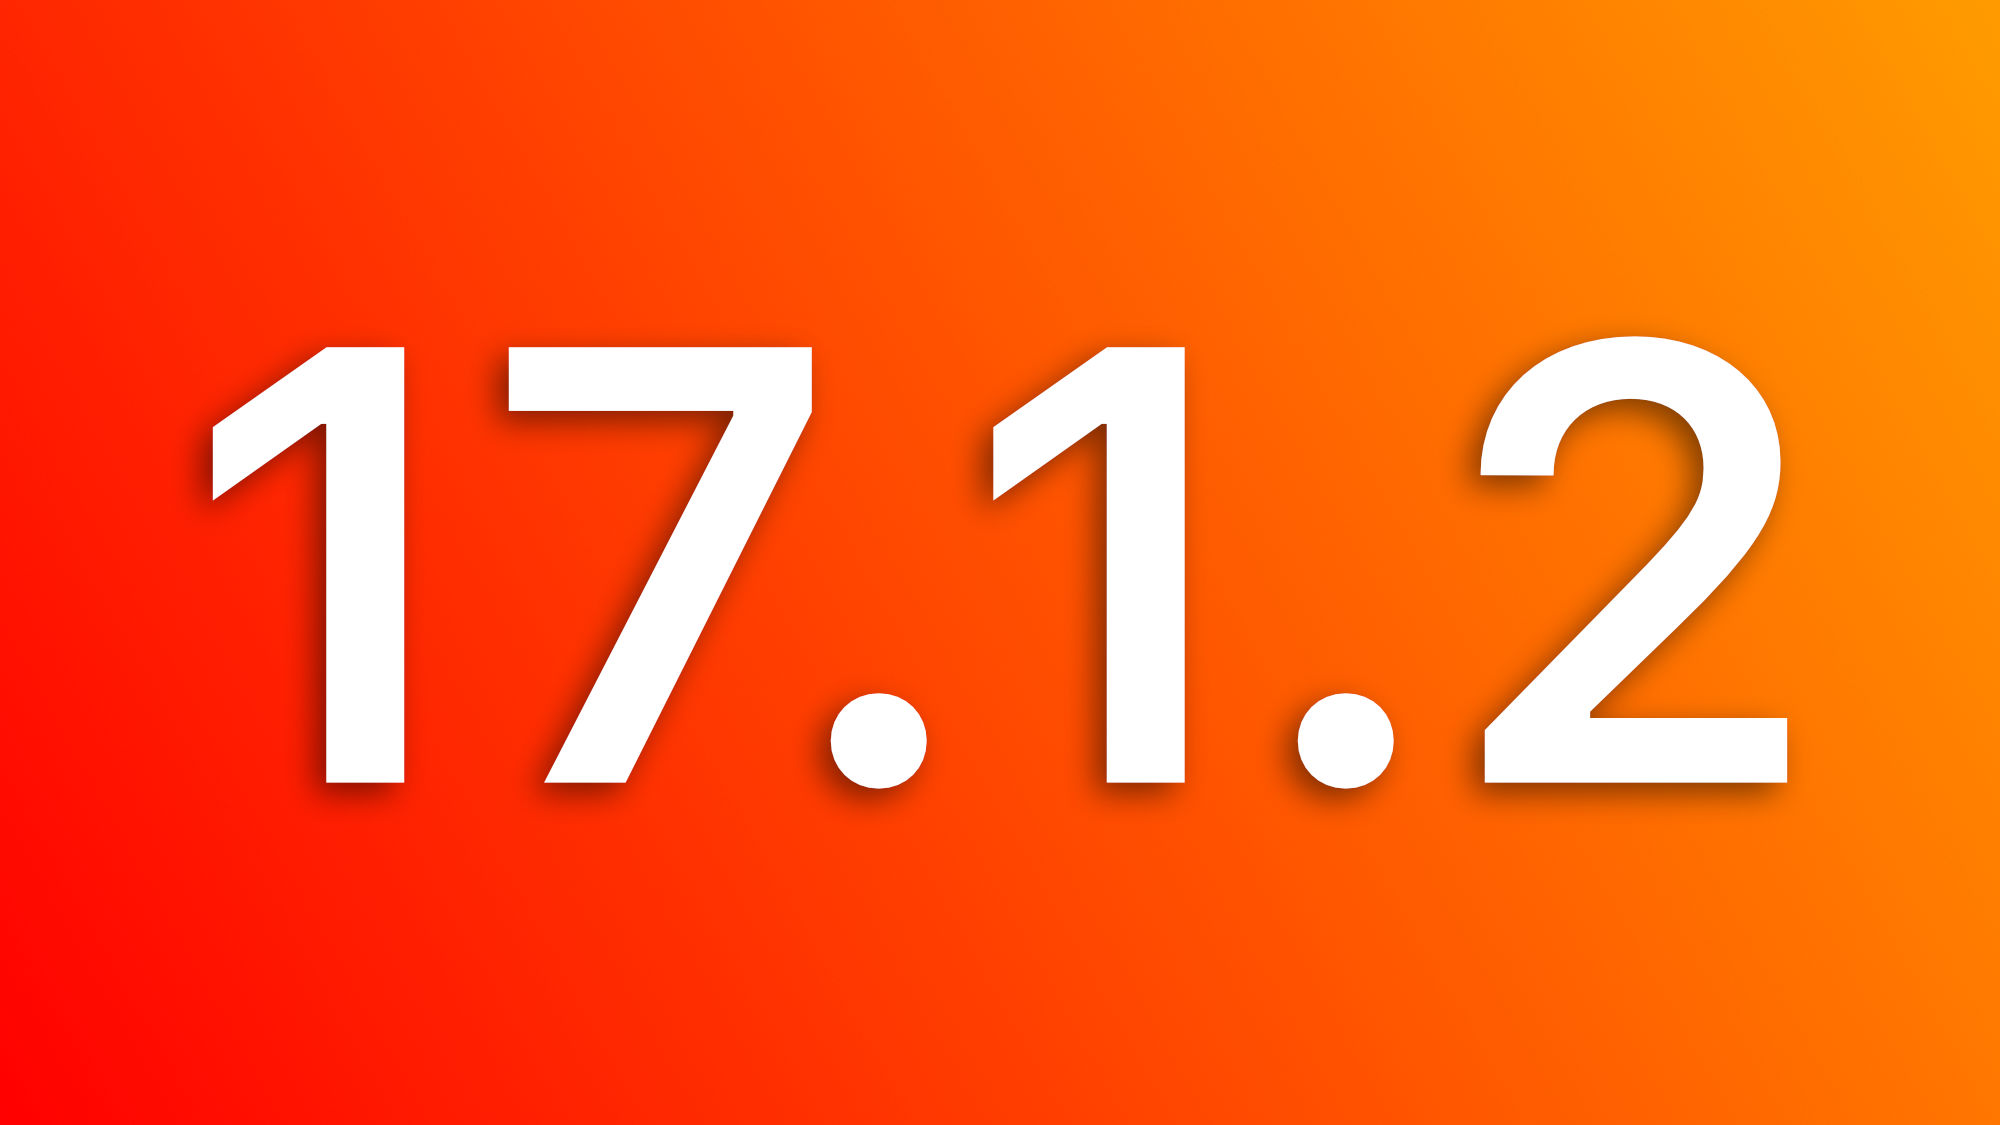 Actualizaciones: iOS 17.1.2 y macOS 14.1.2 llegan con mejoras de seguridad que deberíamos instalar lo antes posible